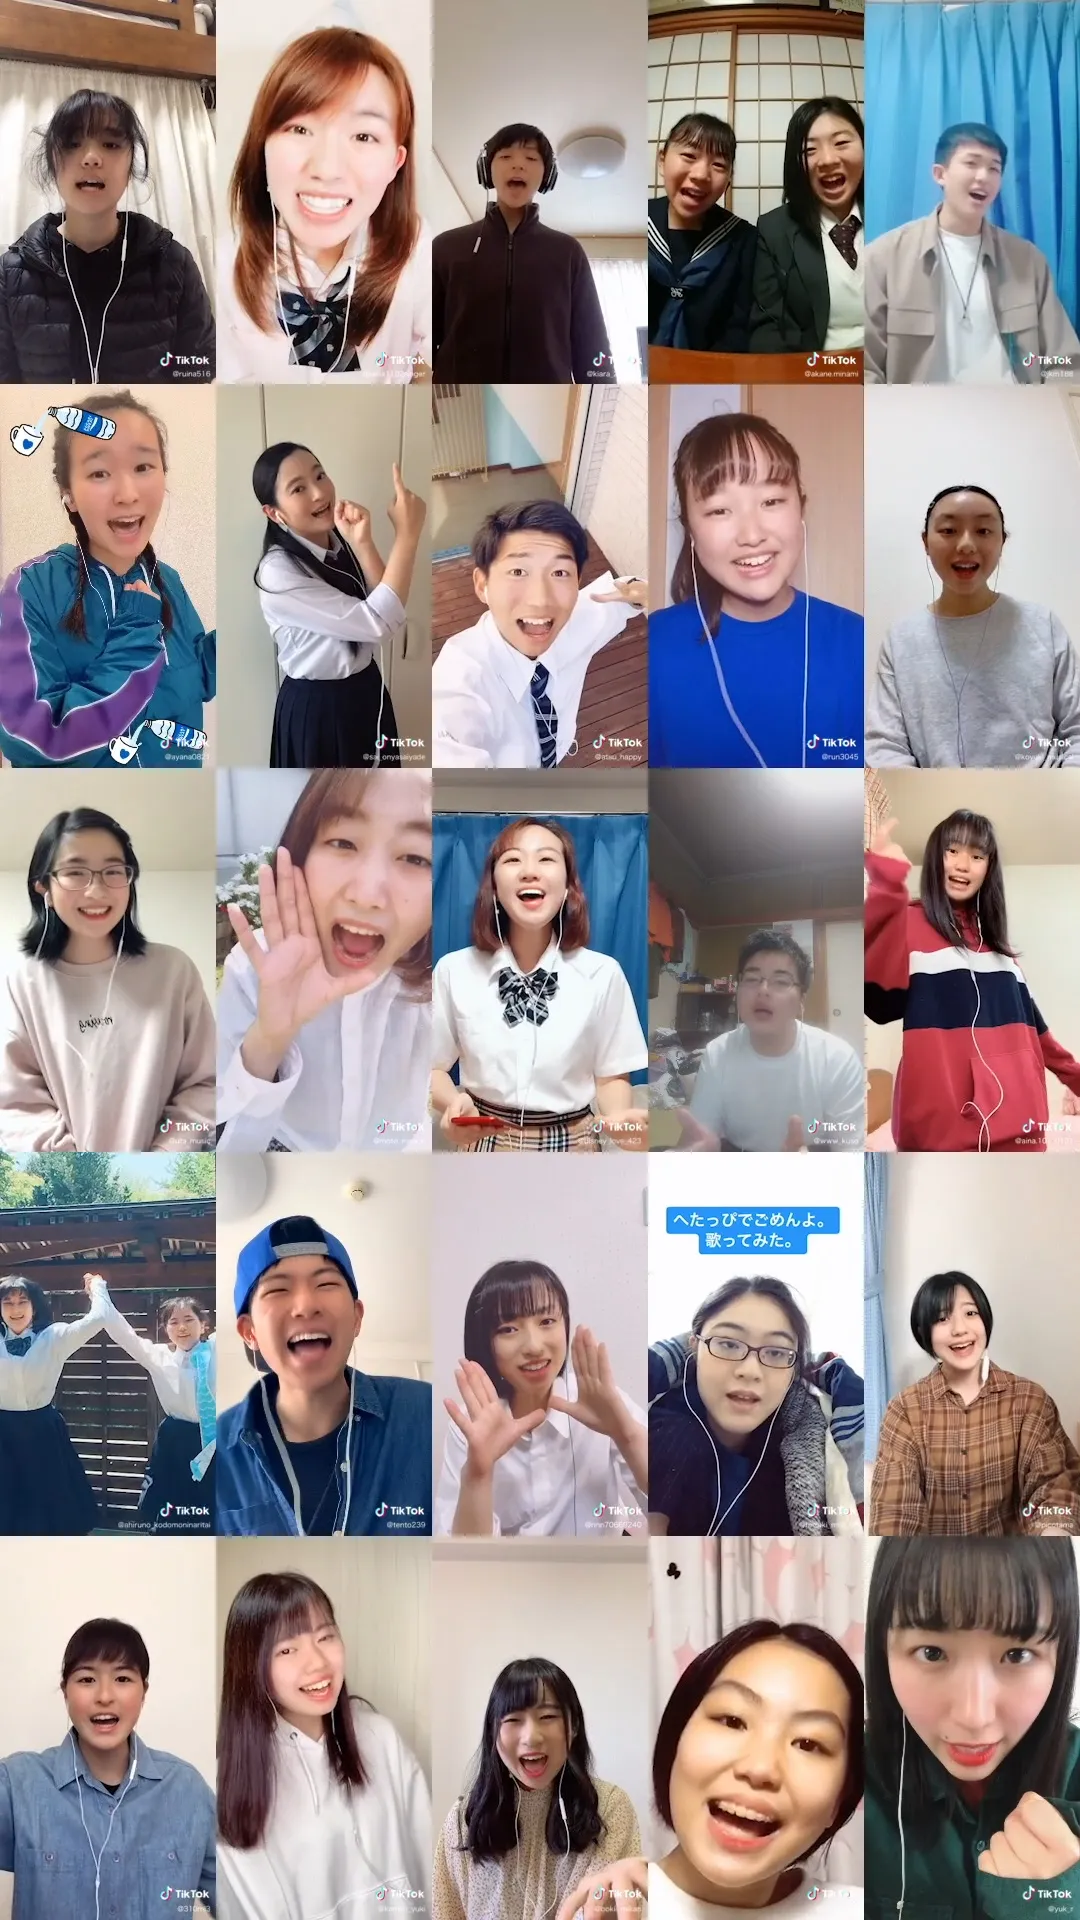 10代による「ポカリ NEO 合唱」をつなぎ合わせた「ありがとう動画」が公開された